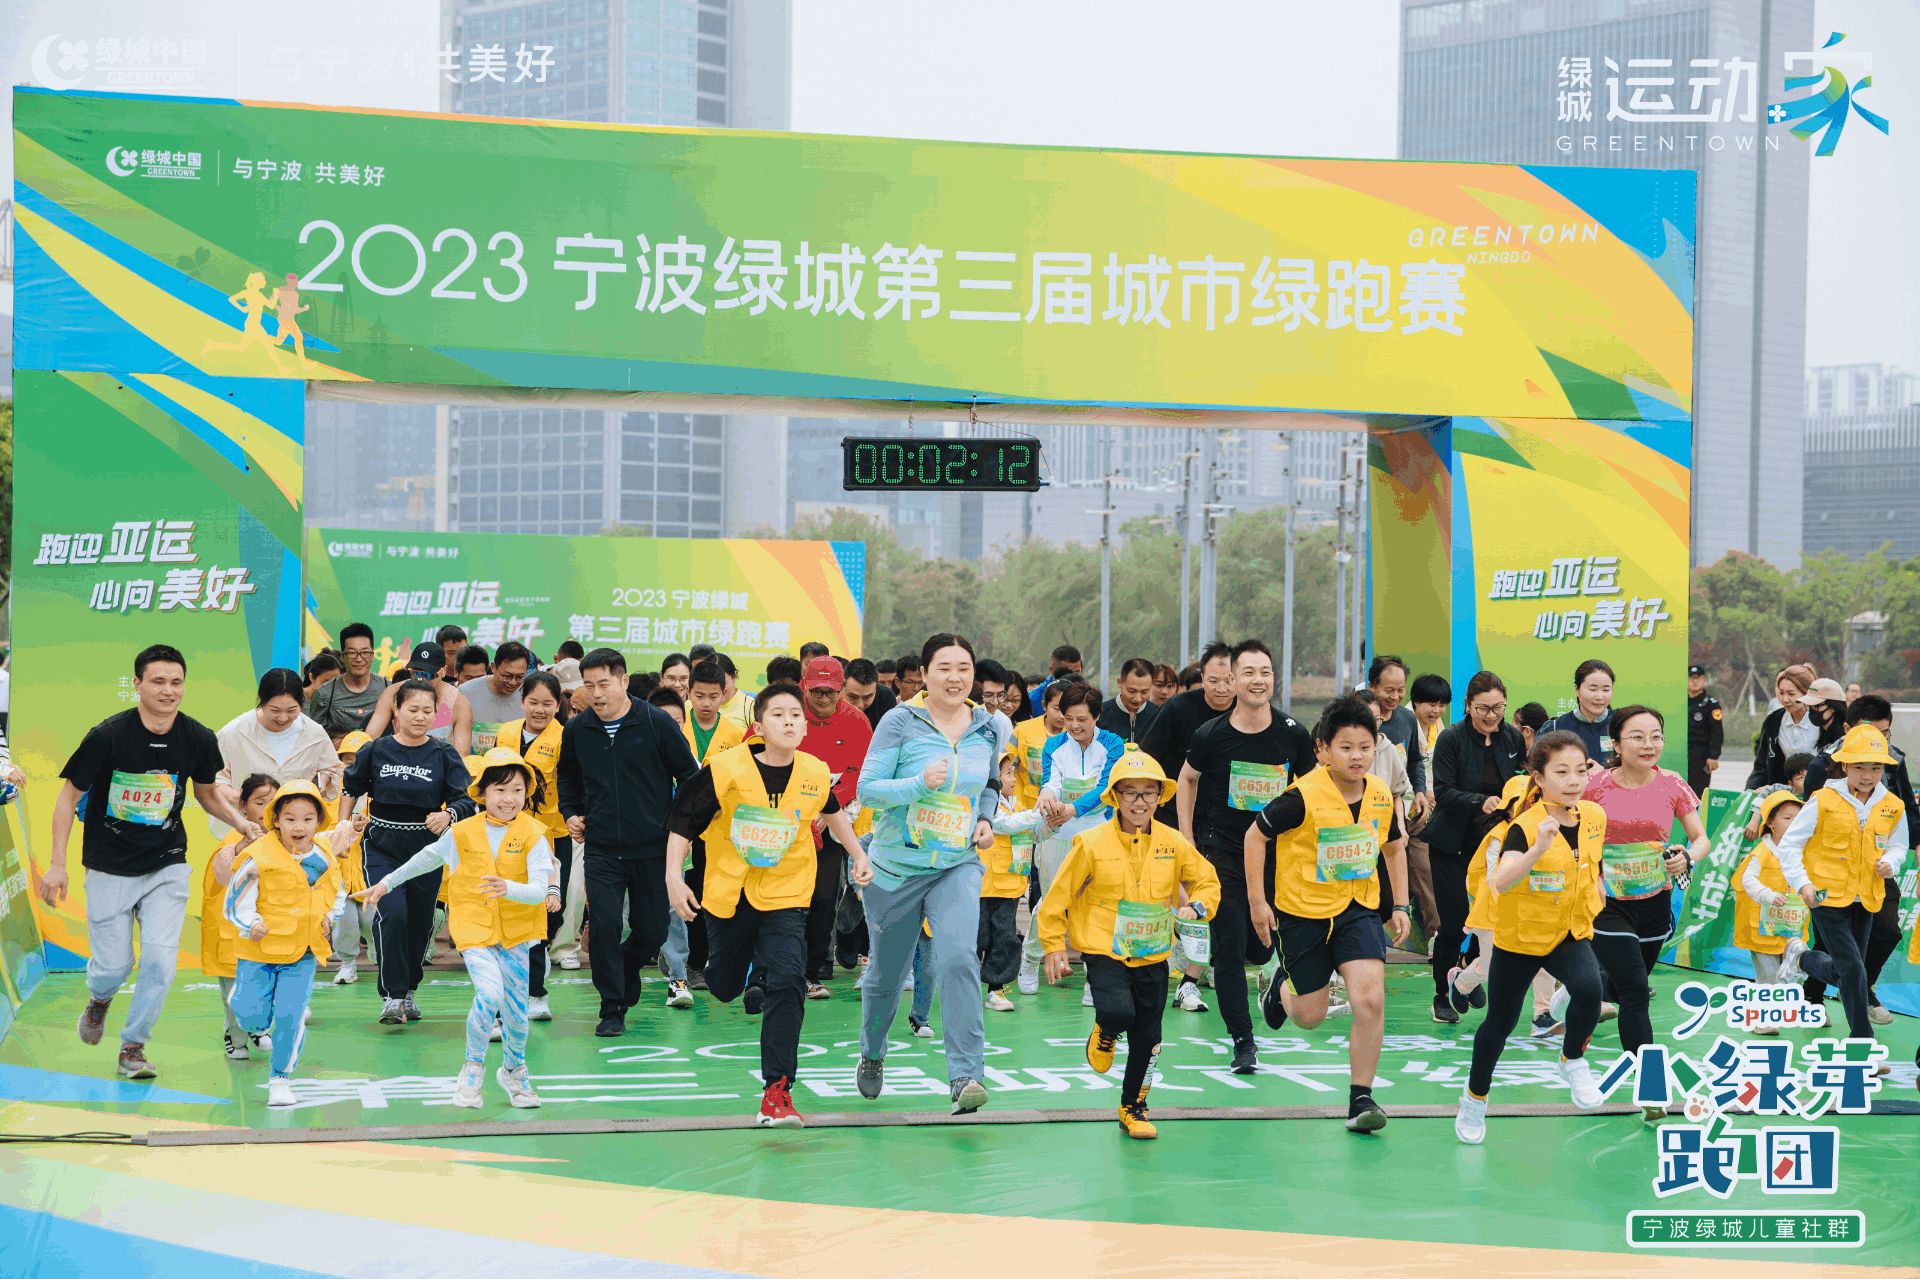 一起绿动2024 | 宁波绿城第四届城市绿跑赛将于4月20日欢乐开跑